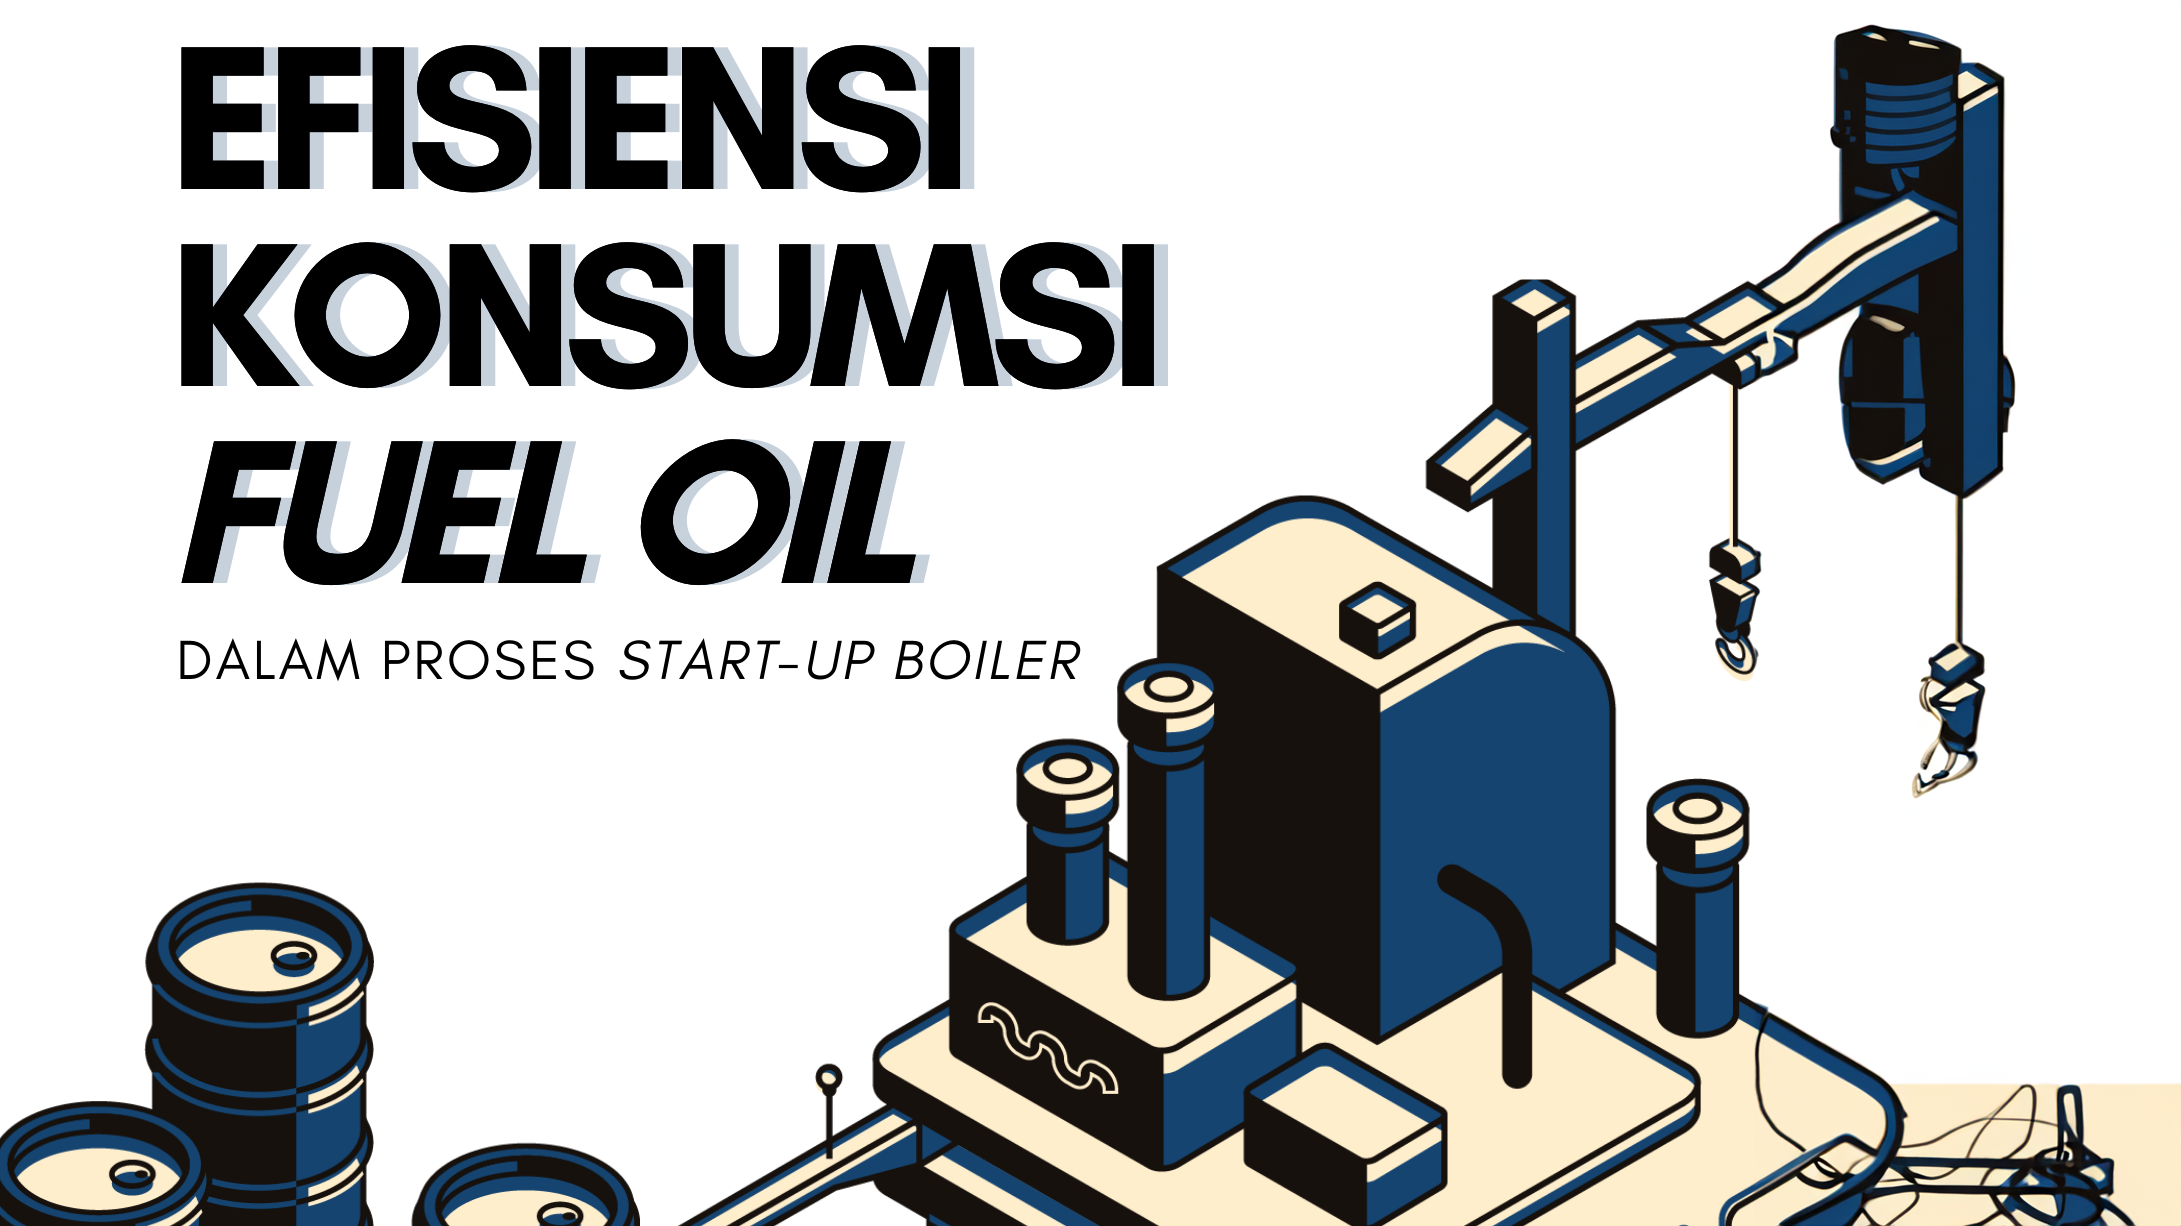 Efisiensi Konsumsi Fuel Oil Dalam Proses Start-Up Boiler